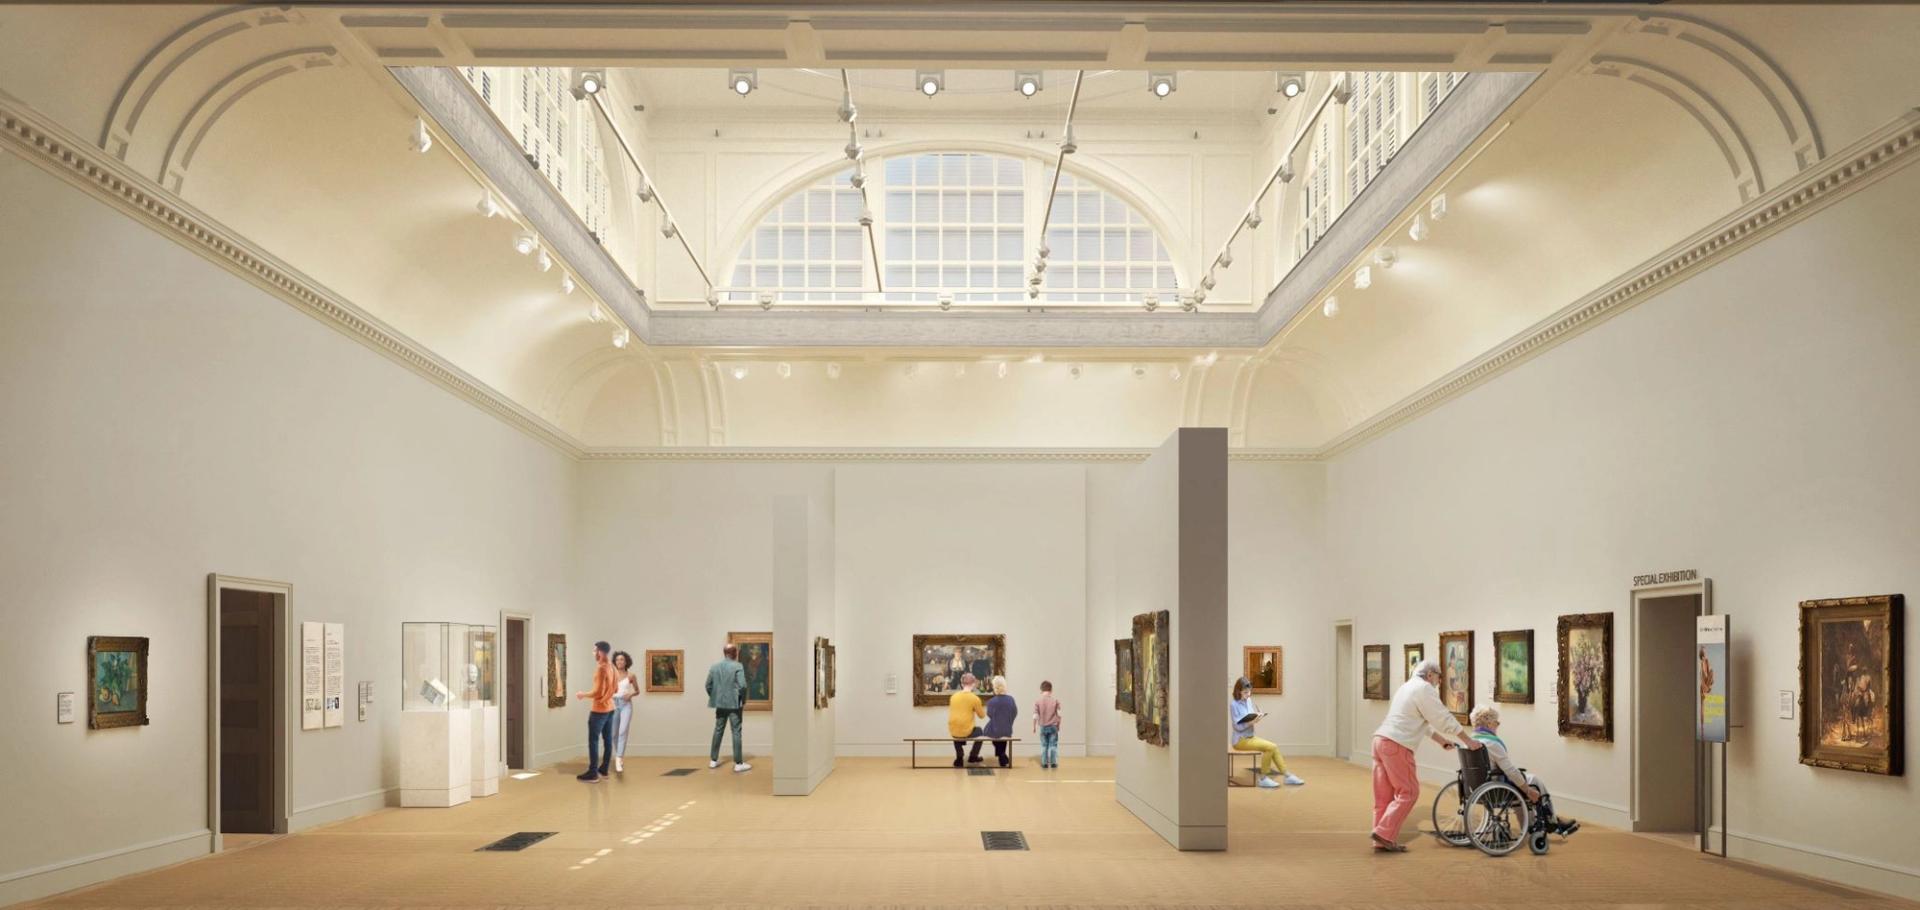 Vue de synthèse de la Great Room réaménagée de la Courtauld Gallery à Londres. © Nissen Richards Studio